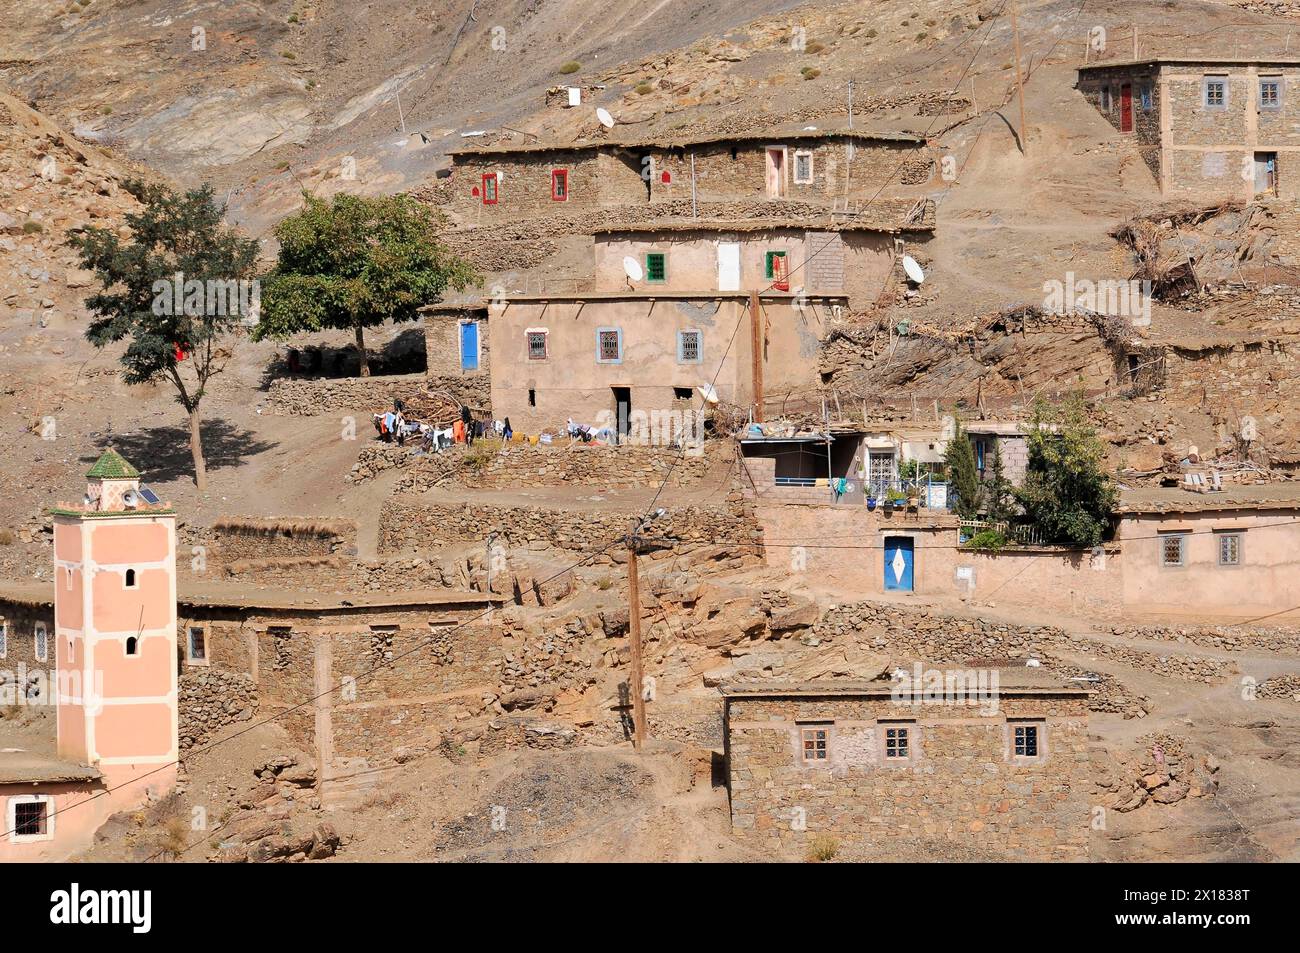 Les maisons de village avec volets colorés sont construites à flanc de montagne, Sud du Haut Atlas, Maroc Banque D'Images